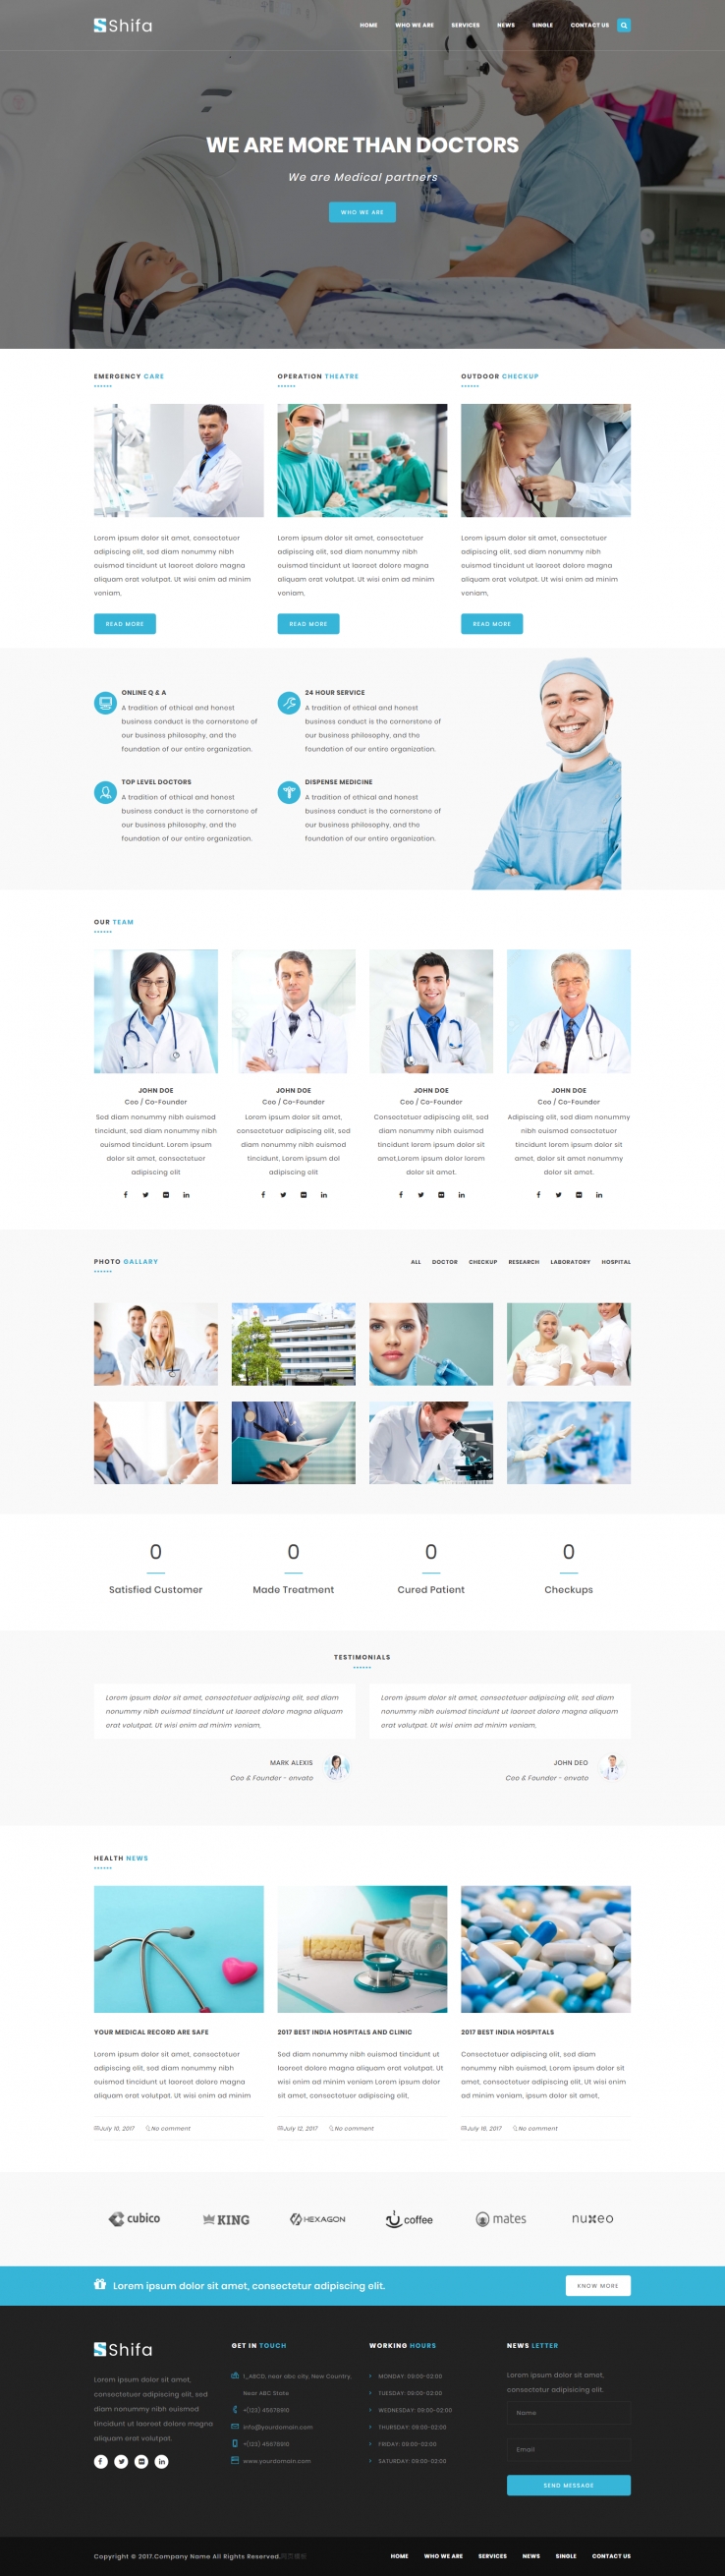 白色宽屏风格的医疗健康体检企业网站模板